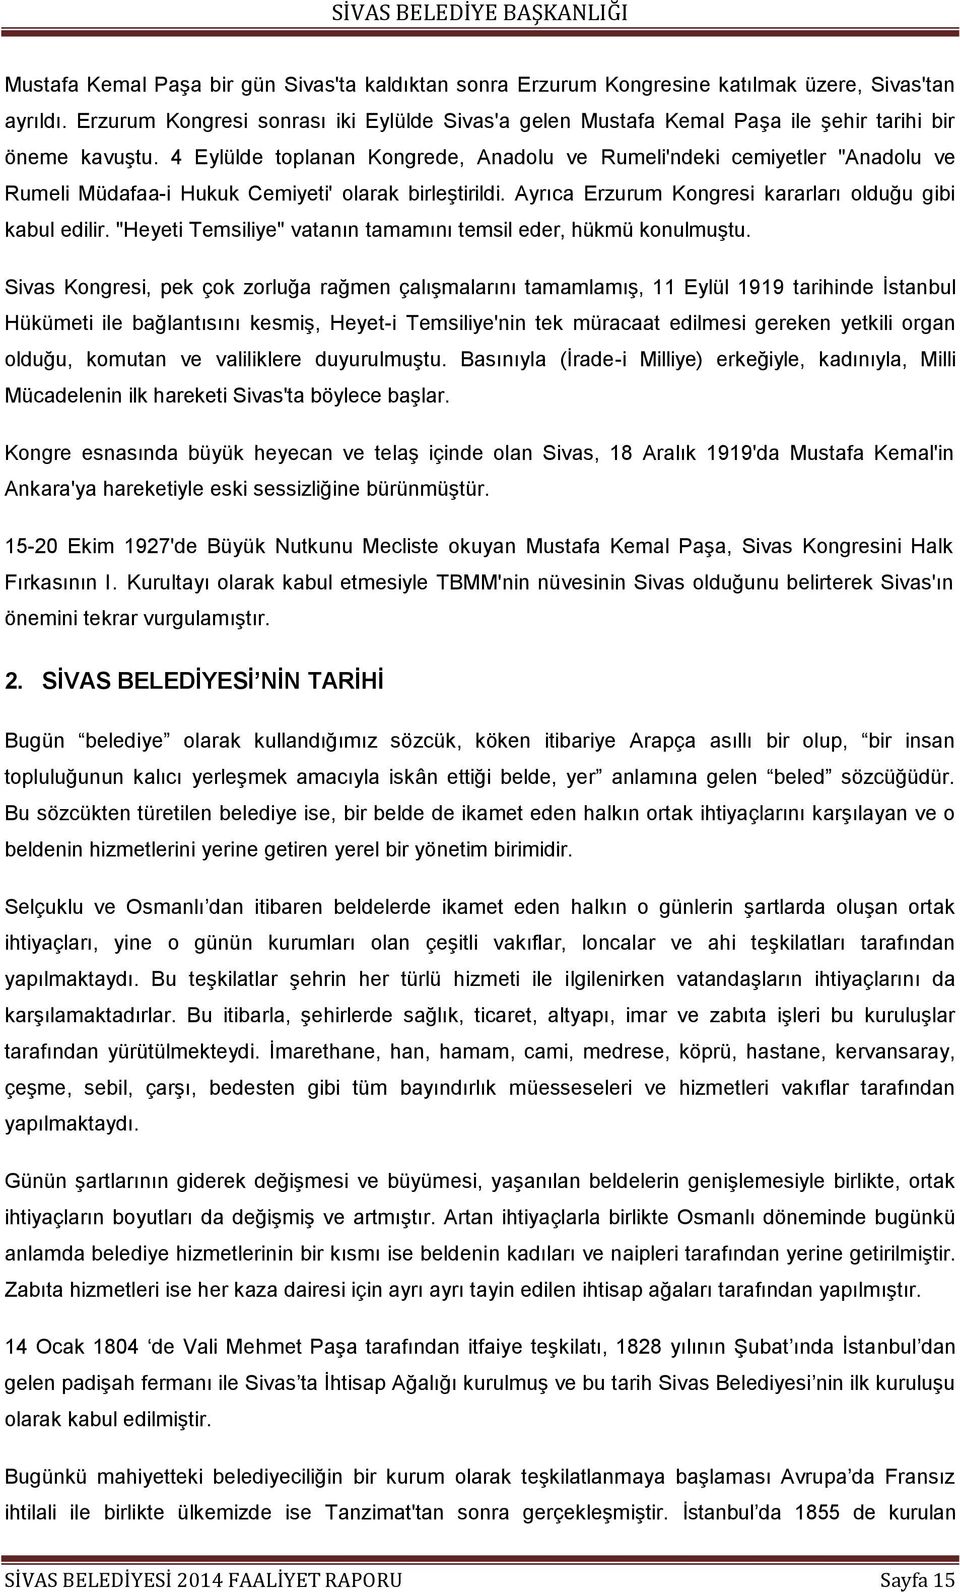 4 Eylülde toplanan Kongrede, Anadolu ve Rumeli'ndeki cemiyetler "Anadolu ve Rumeli Müdafaa-i Hukuk Cemiyeti' olarak birleģtirildi. Ayrıca Erzurum Kongresi kararları olduğu gibi kabul edilir.